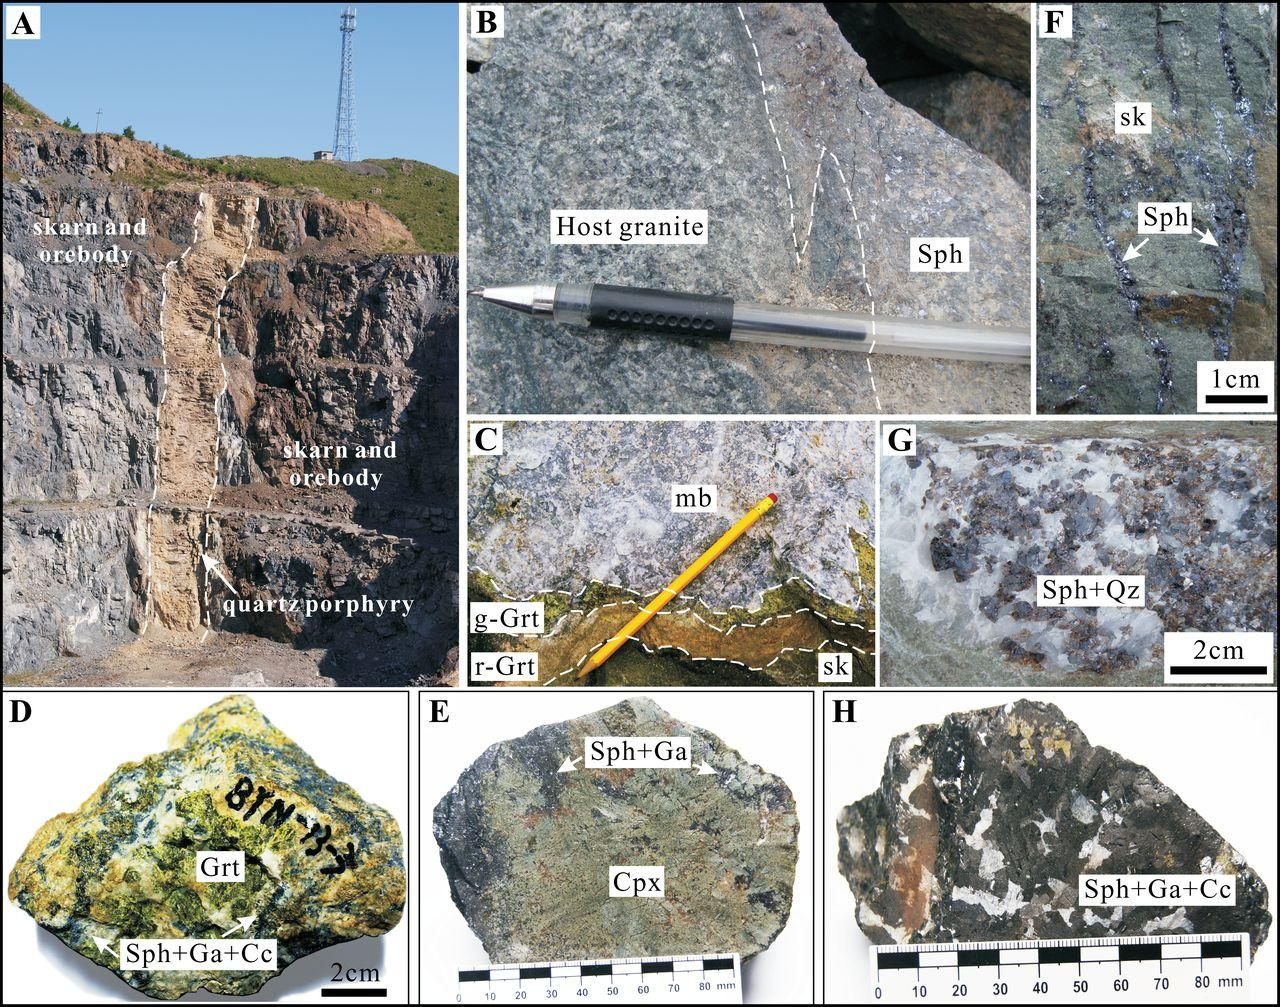 Figura 12. Algunos minerales encontrados durante la alteración retrógrada. Fuente: Shu et al., 2013. Econ Geol, 108(4): 835-860.